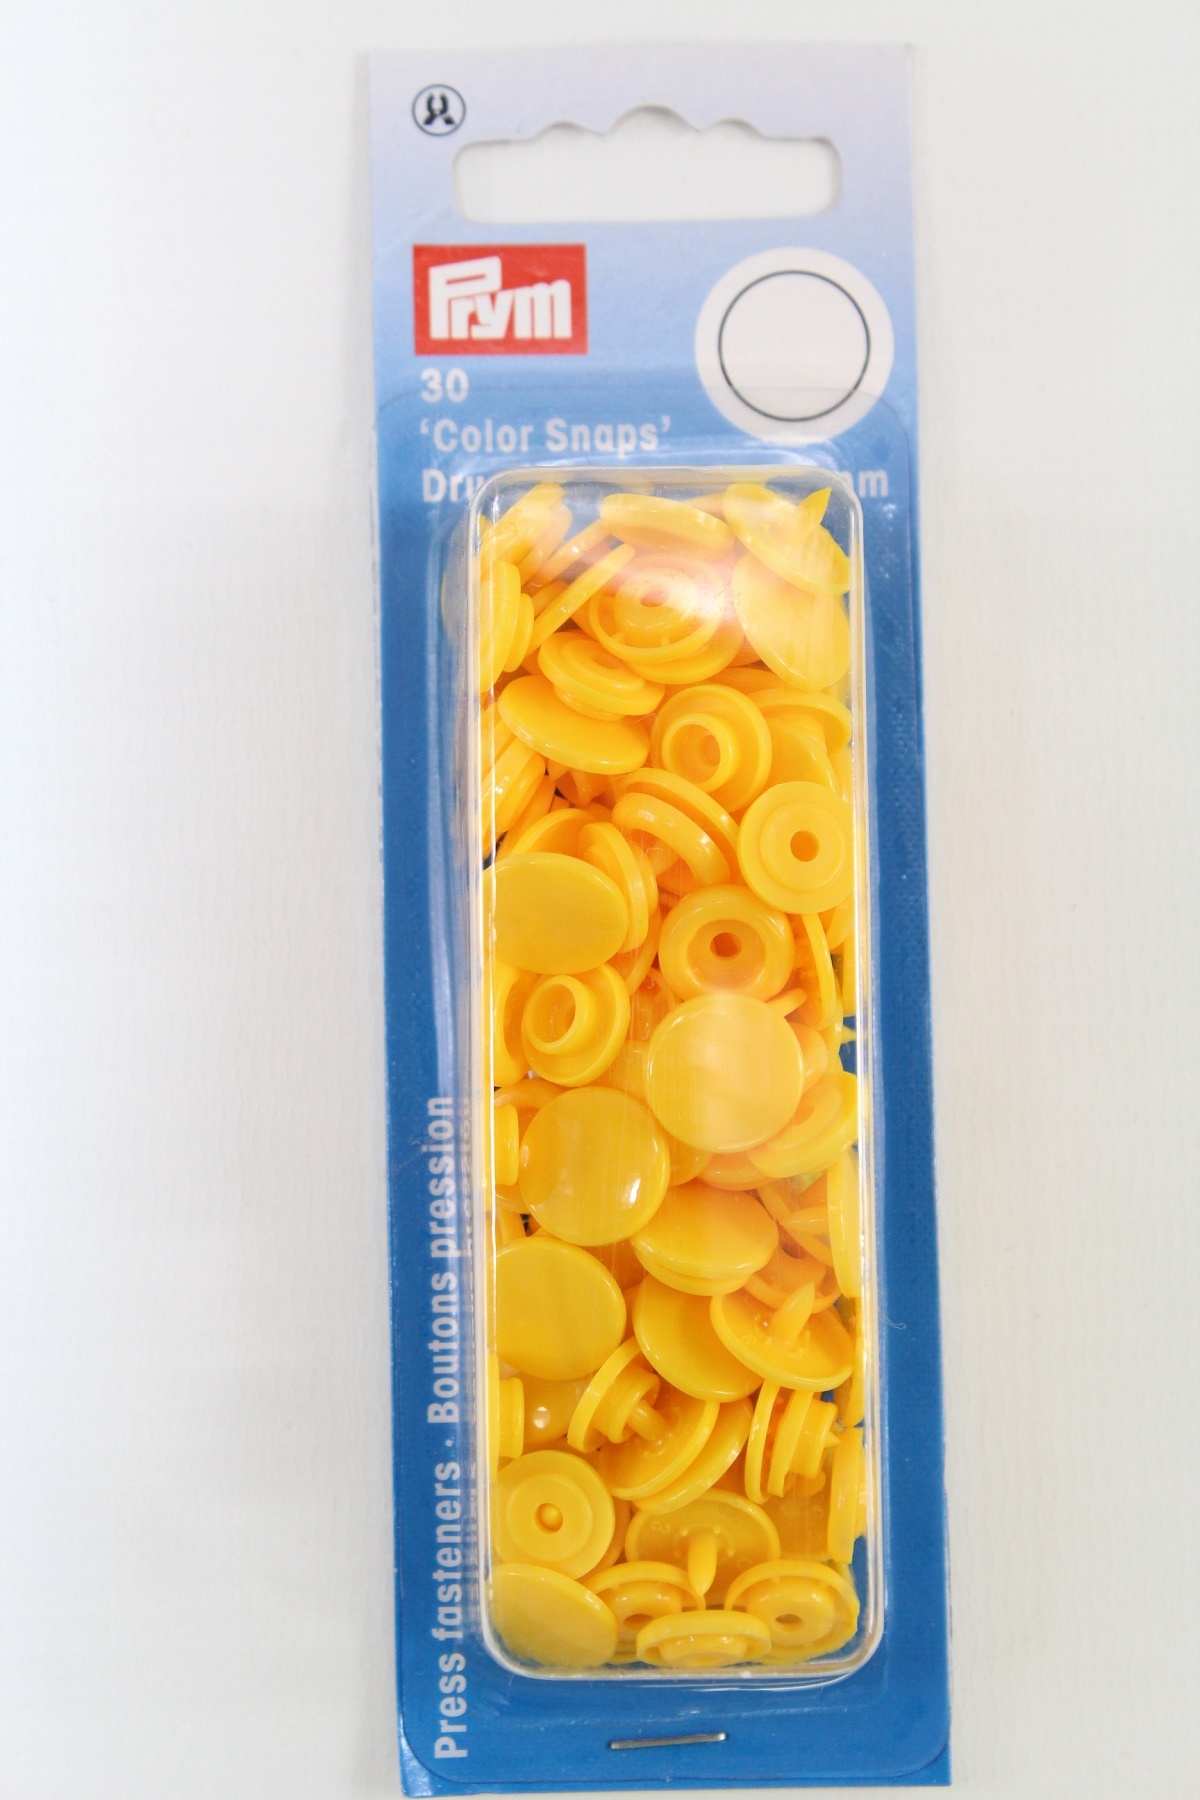 30 Nähfrei-Druckknöpfe "Color Snaps", rund, 12,4mm, gelb